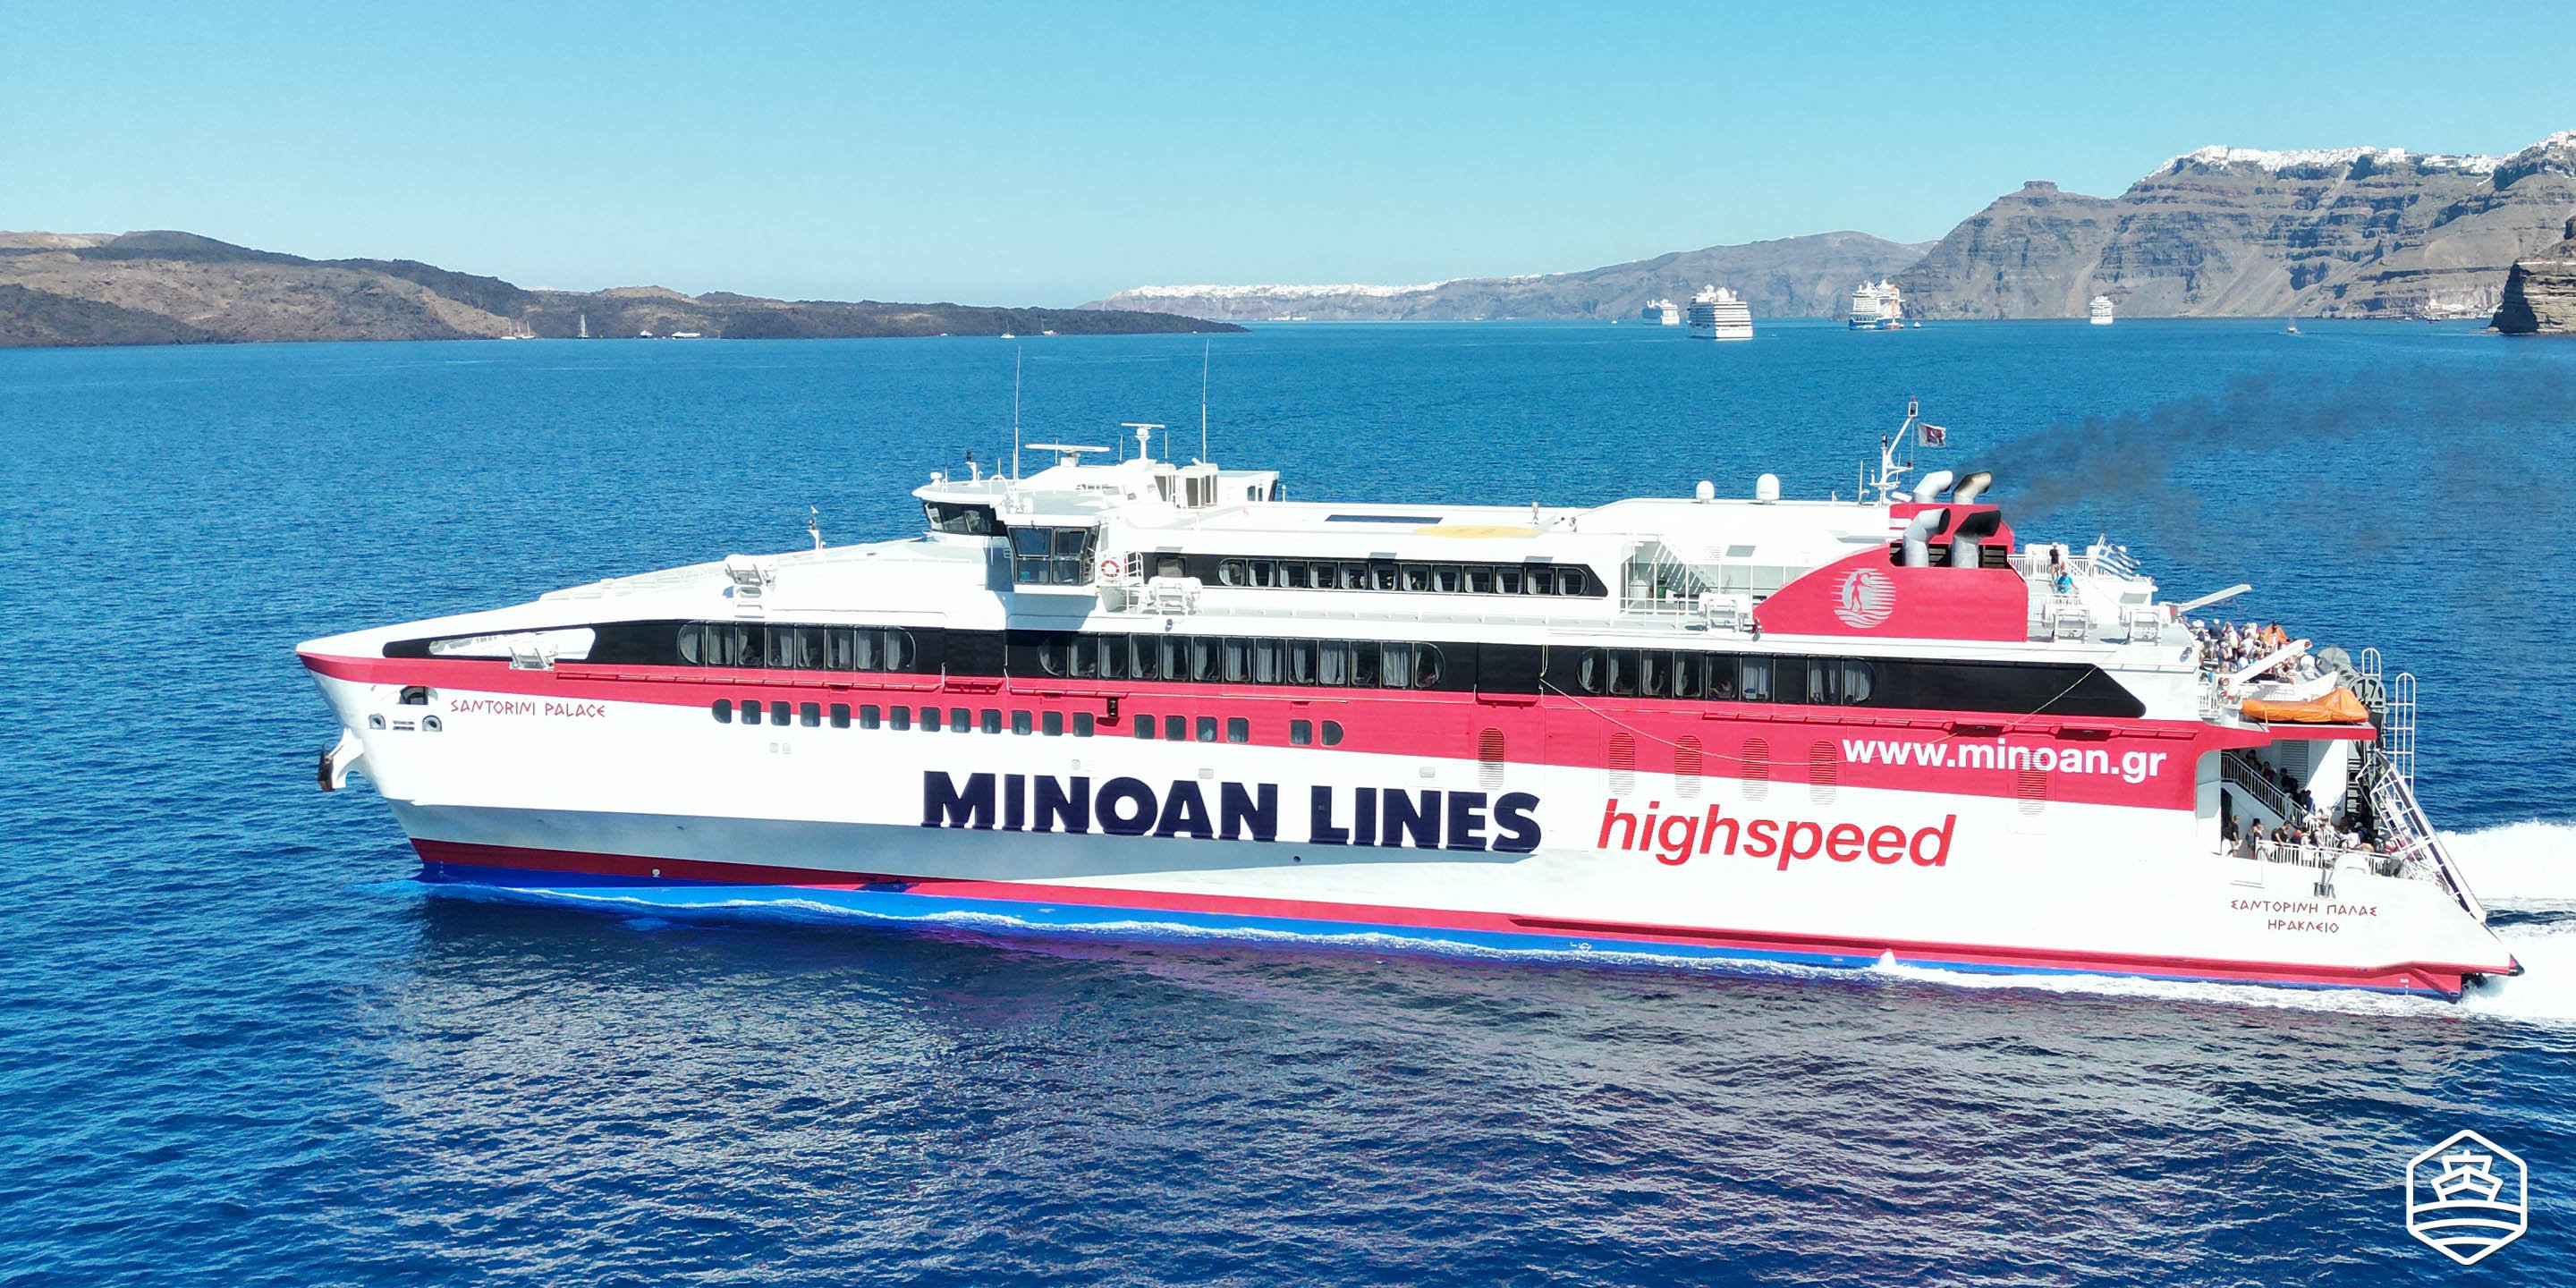 Il traghetto ad alta velocità Santorini Palace di Minoan Lines lascia il porto di Athinios a Santorini per Heraklion a Creta